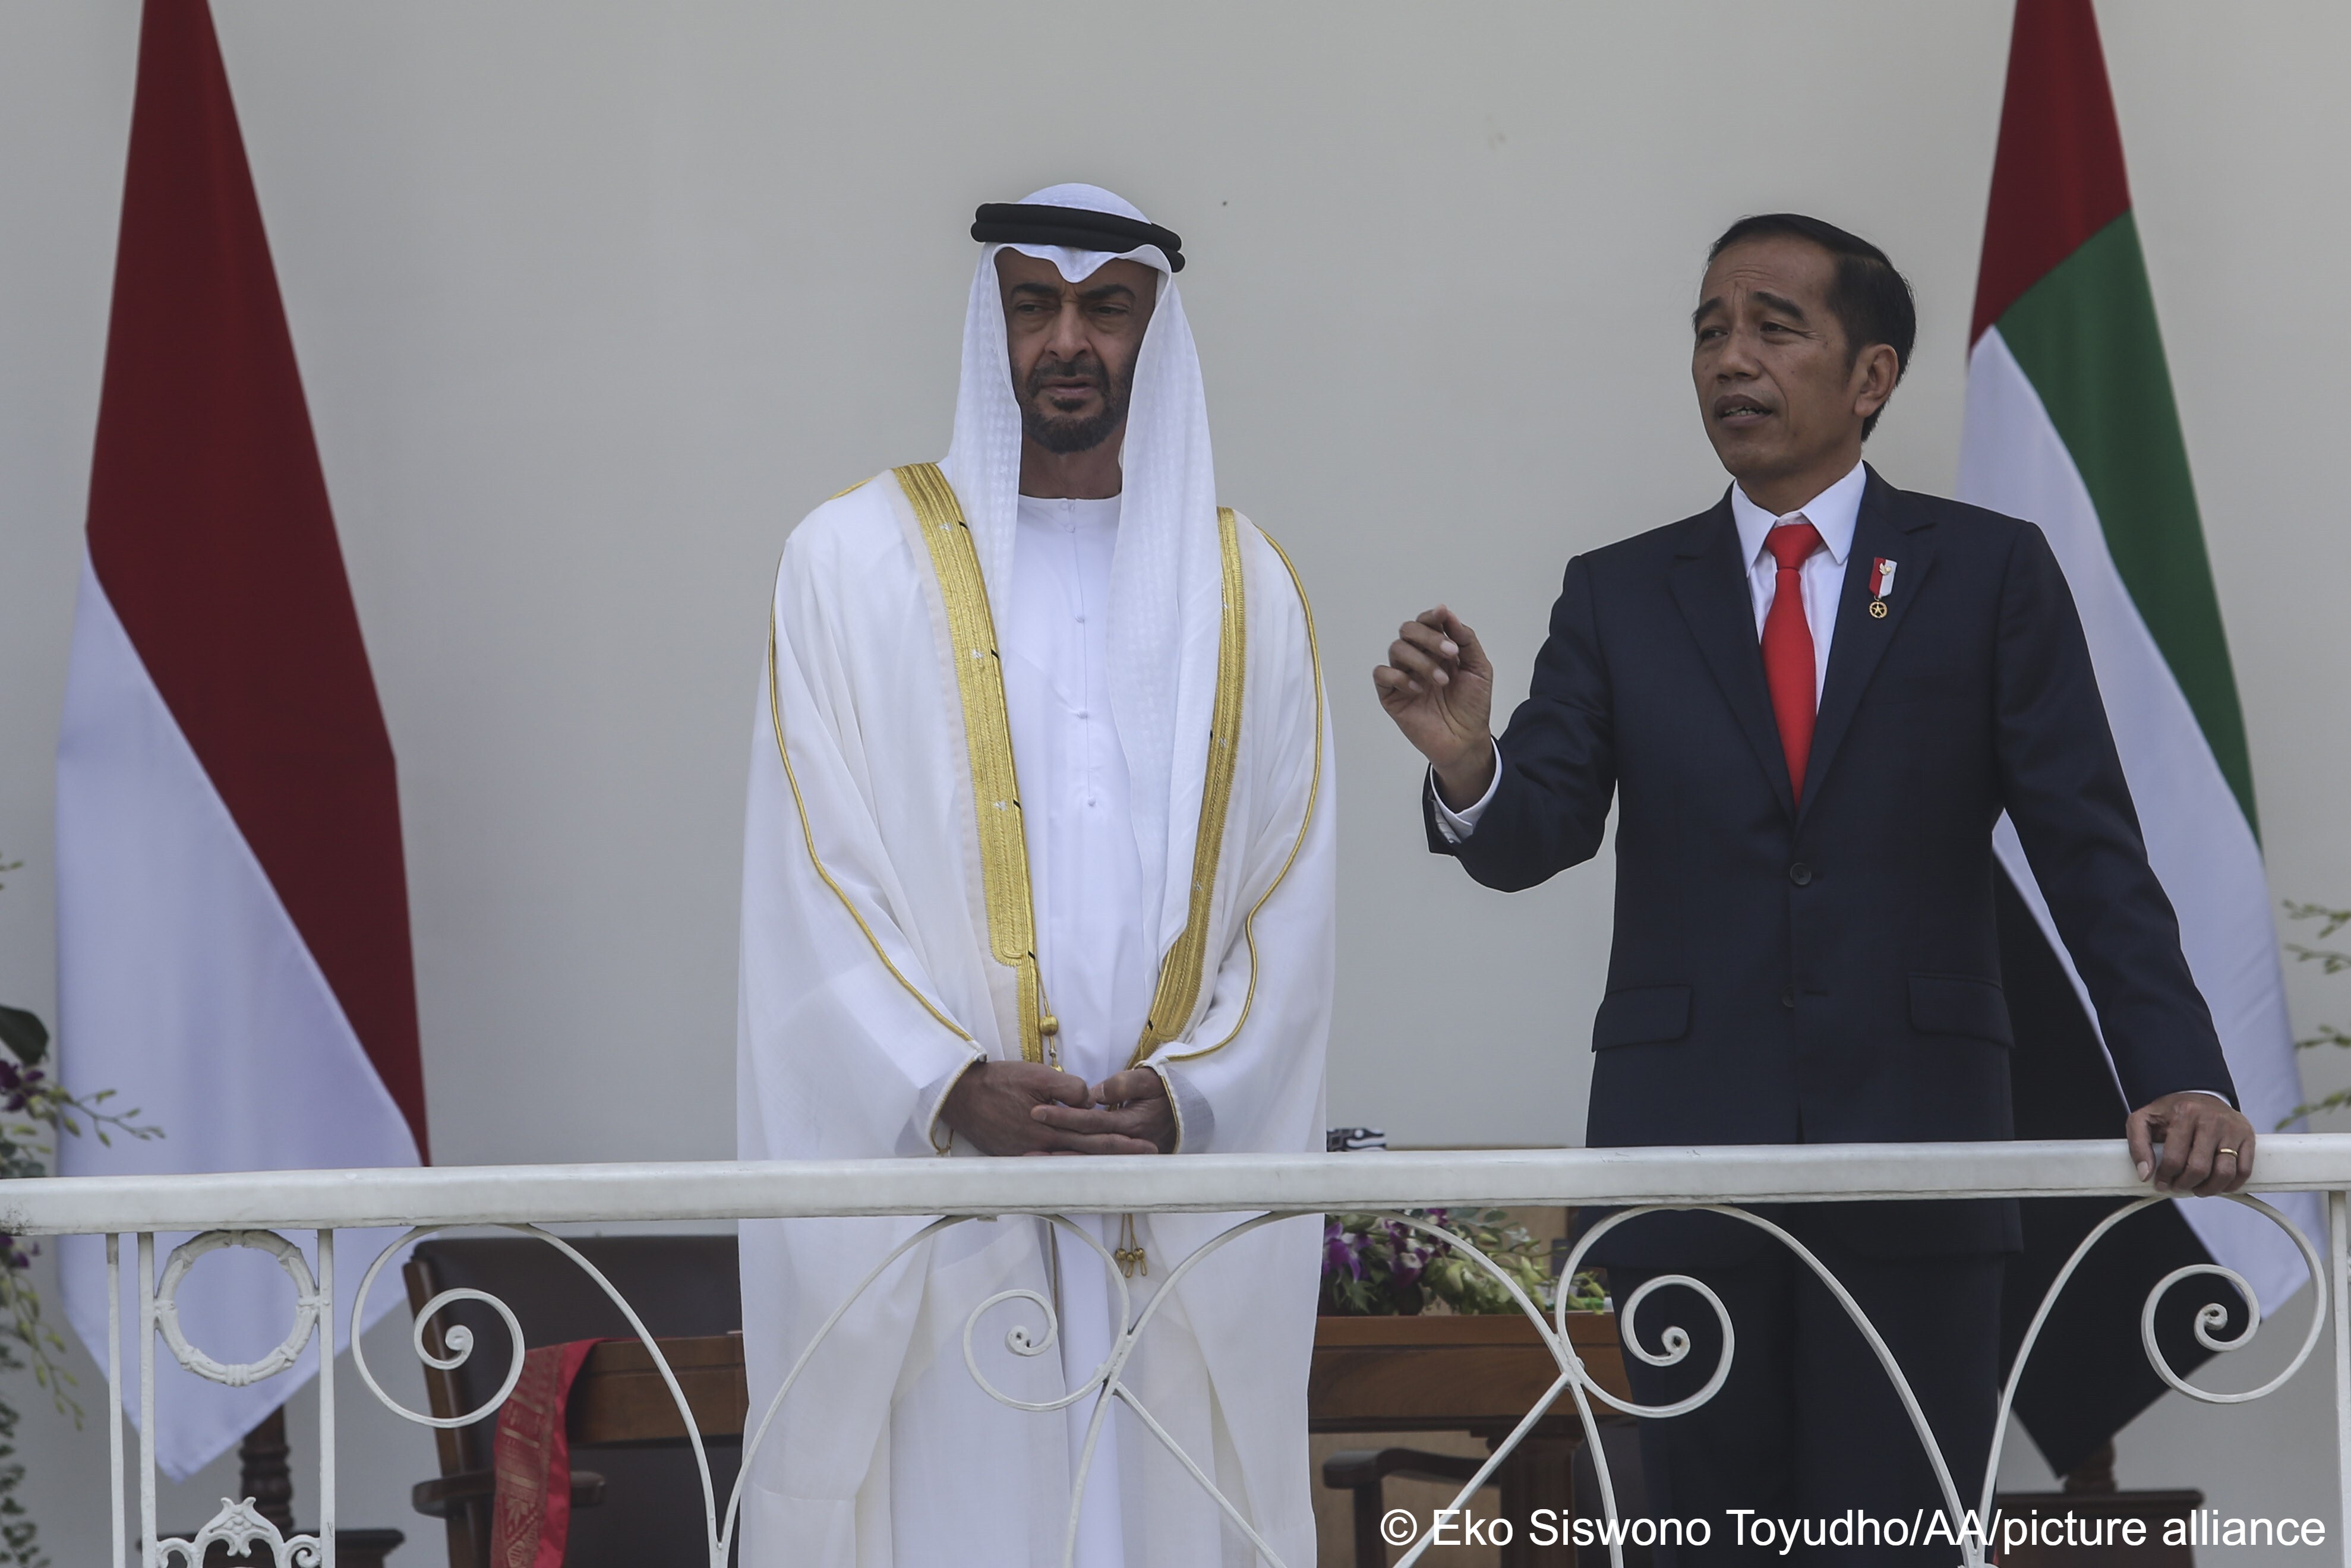 ولي عهد الإمارات محمد بن زايد آل نهيان والرئيس الإندونيسي جوكو ويدودو في جاكرتا  2019.